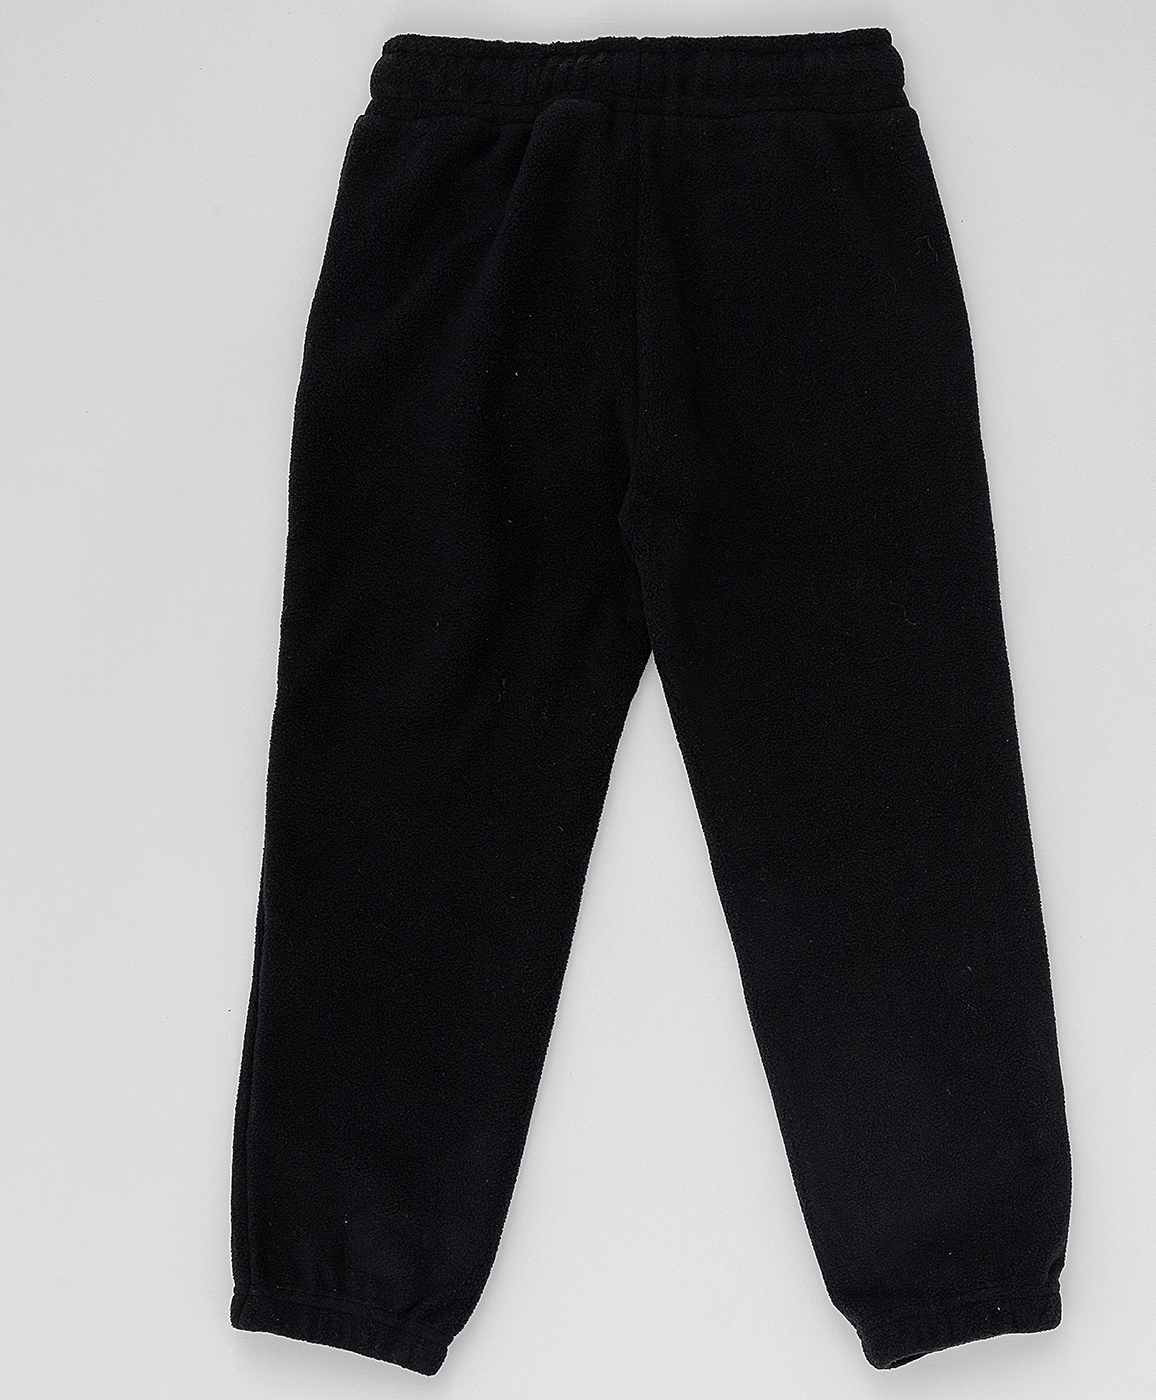 Черные флисовые брюки Button Blue 220BBBA56010800, размер 152, цвет черный на резинке - фото 2